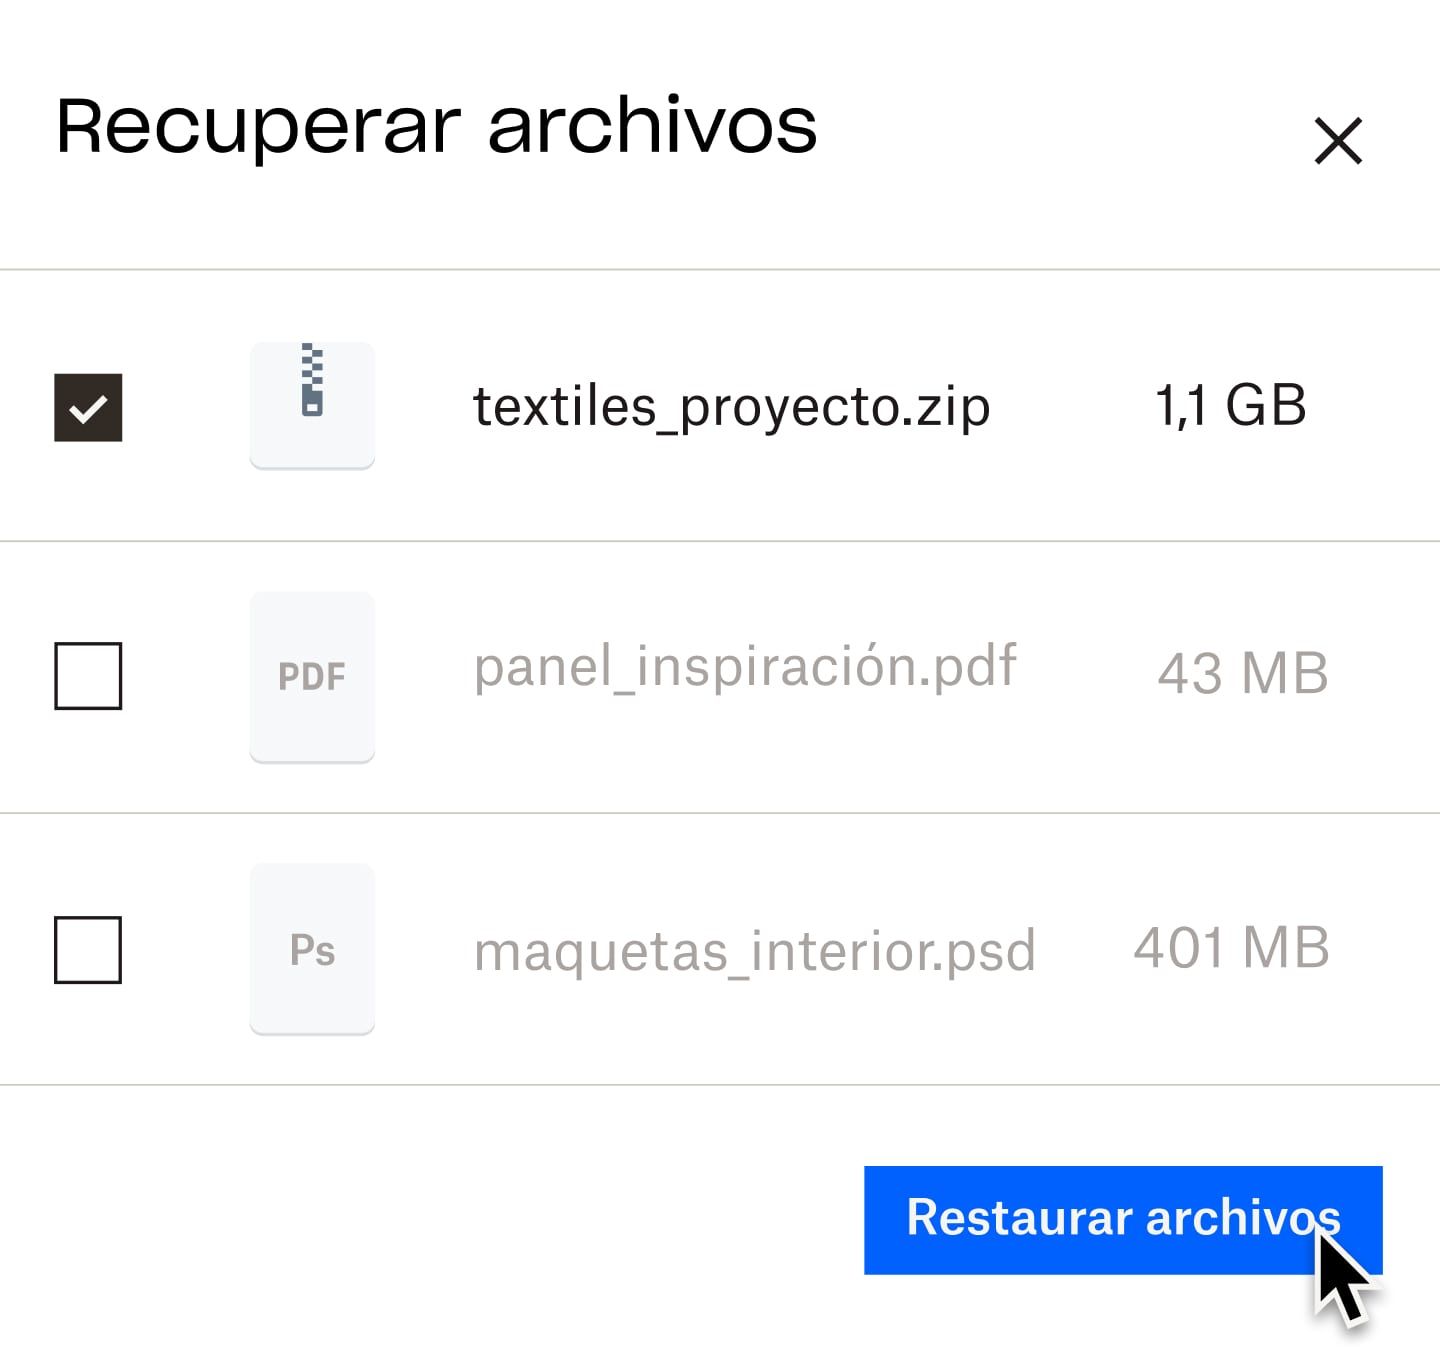 Un usuario que hace clic en un botón azul denominado “restaurar archivos”